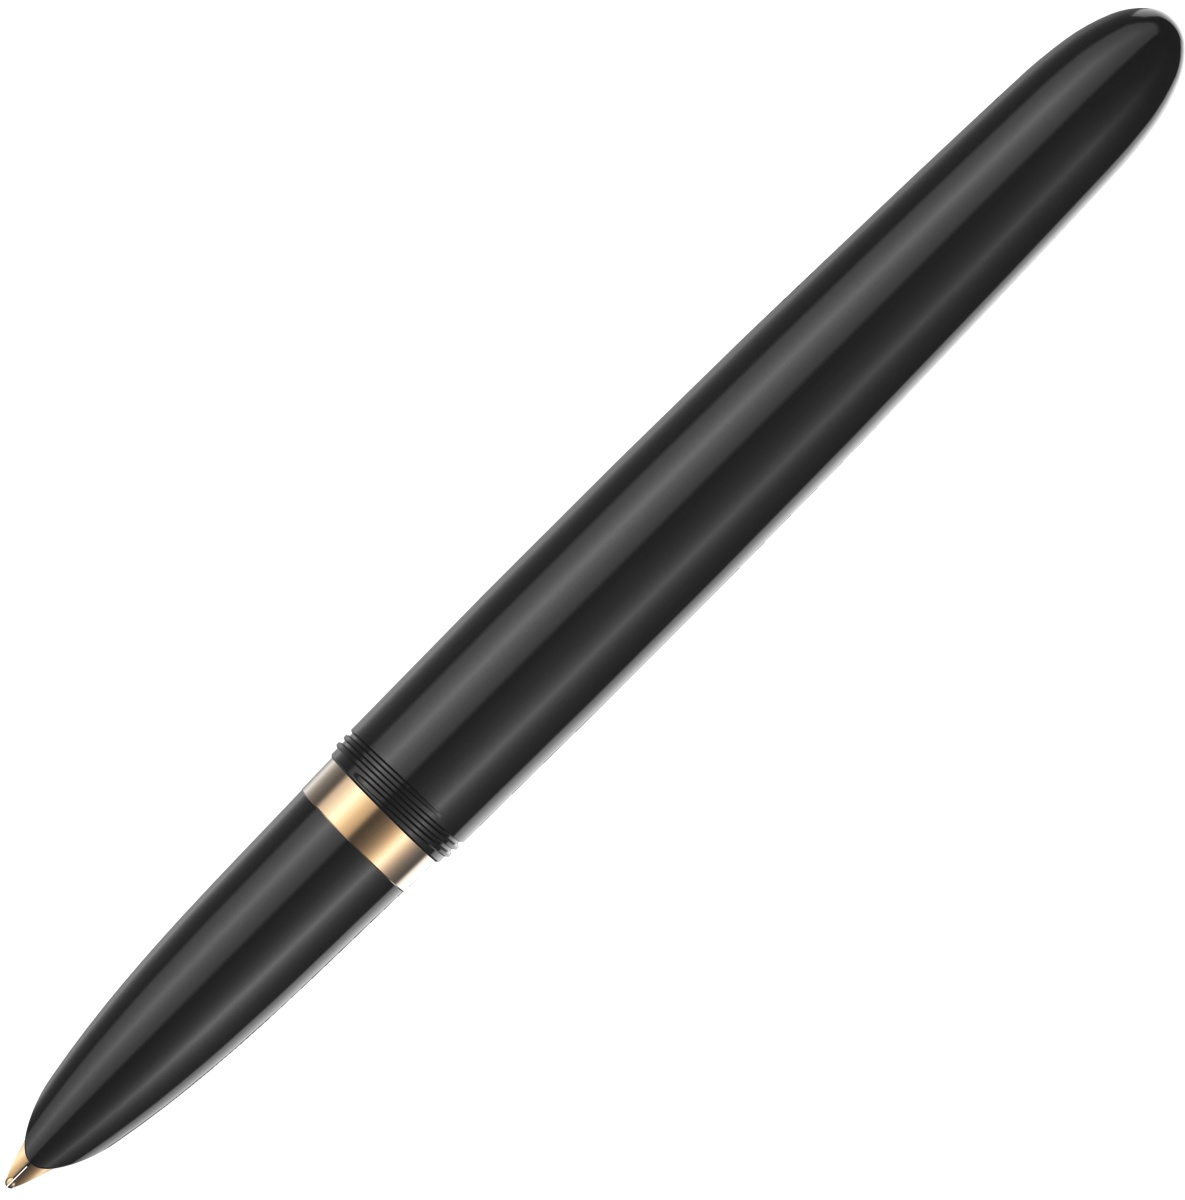  Ручка перьевая Parker 51 Premium, Black GT (Перо F), фото 4